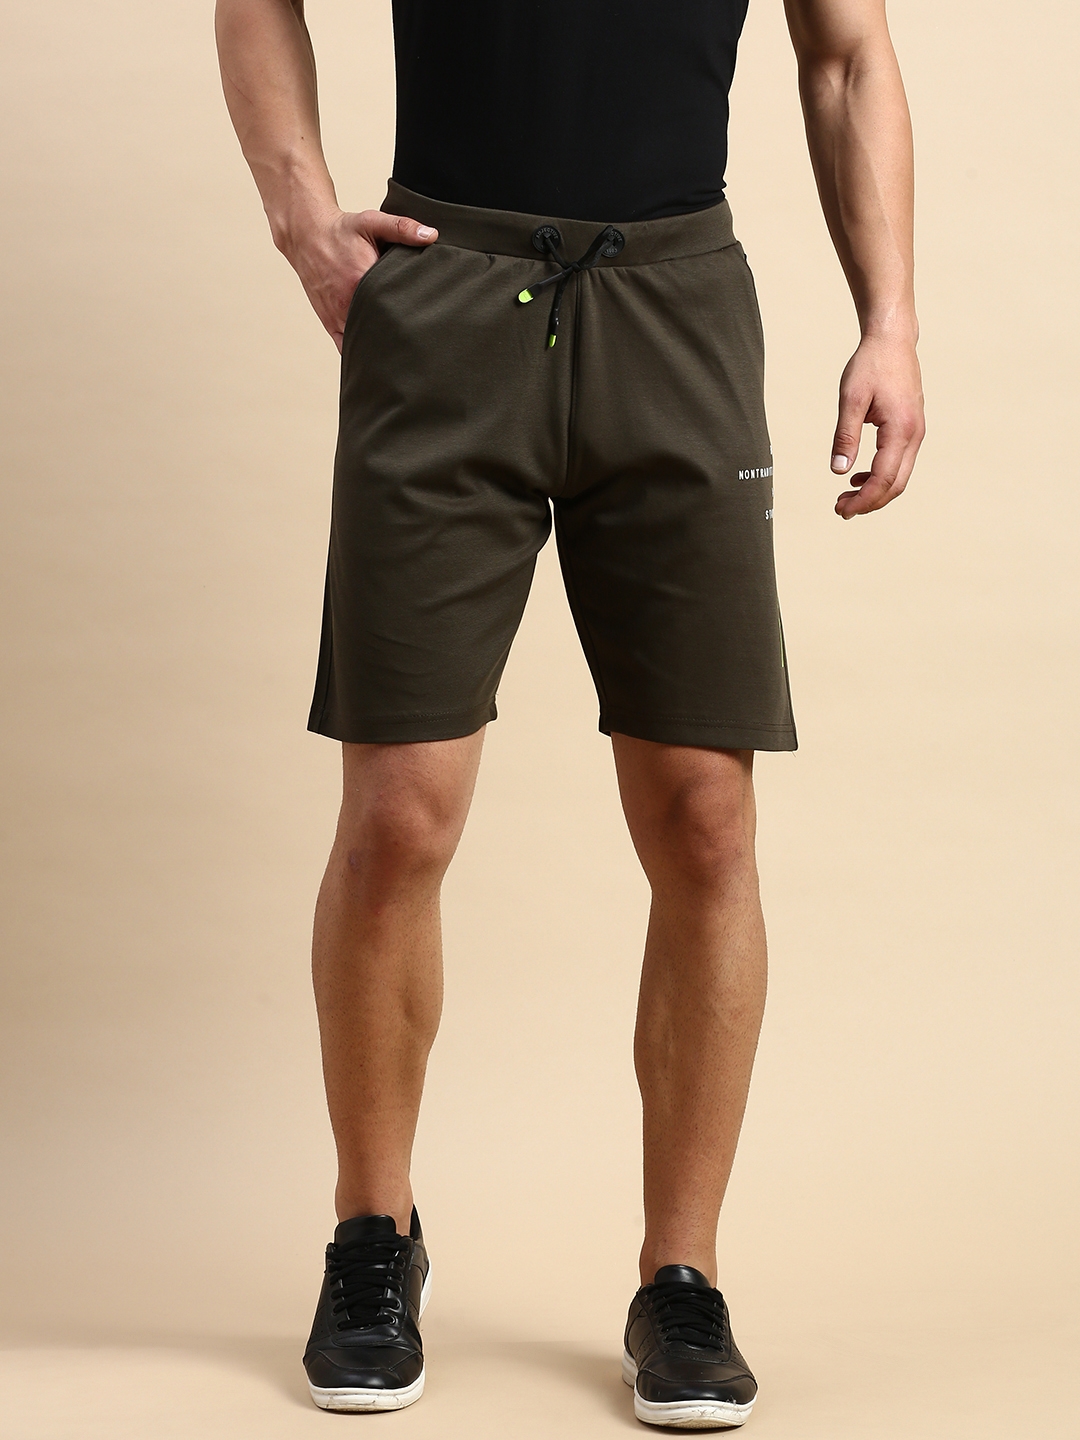 Showoff | SHOWOFF Men's Solid Olive Knee Length Regular Shorts 0